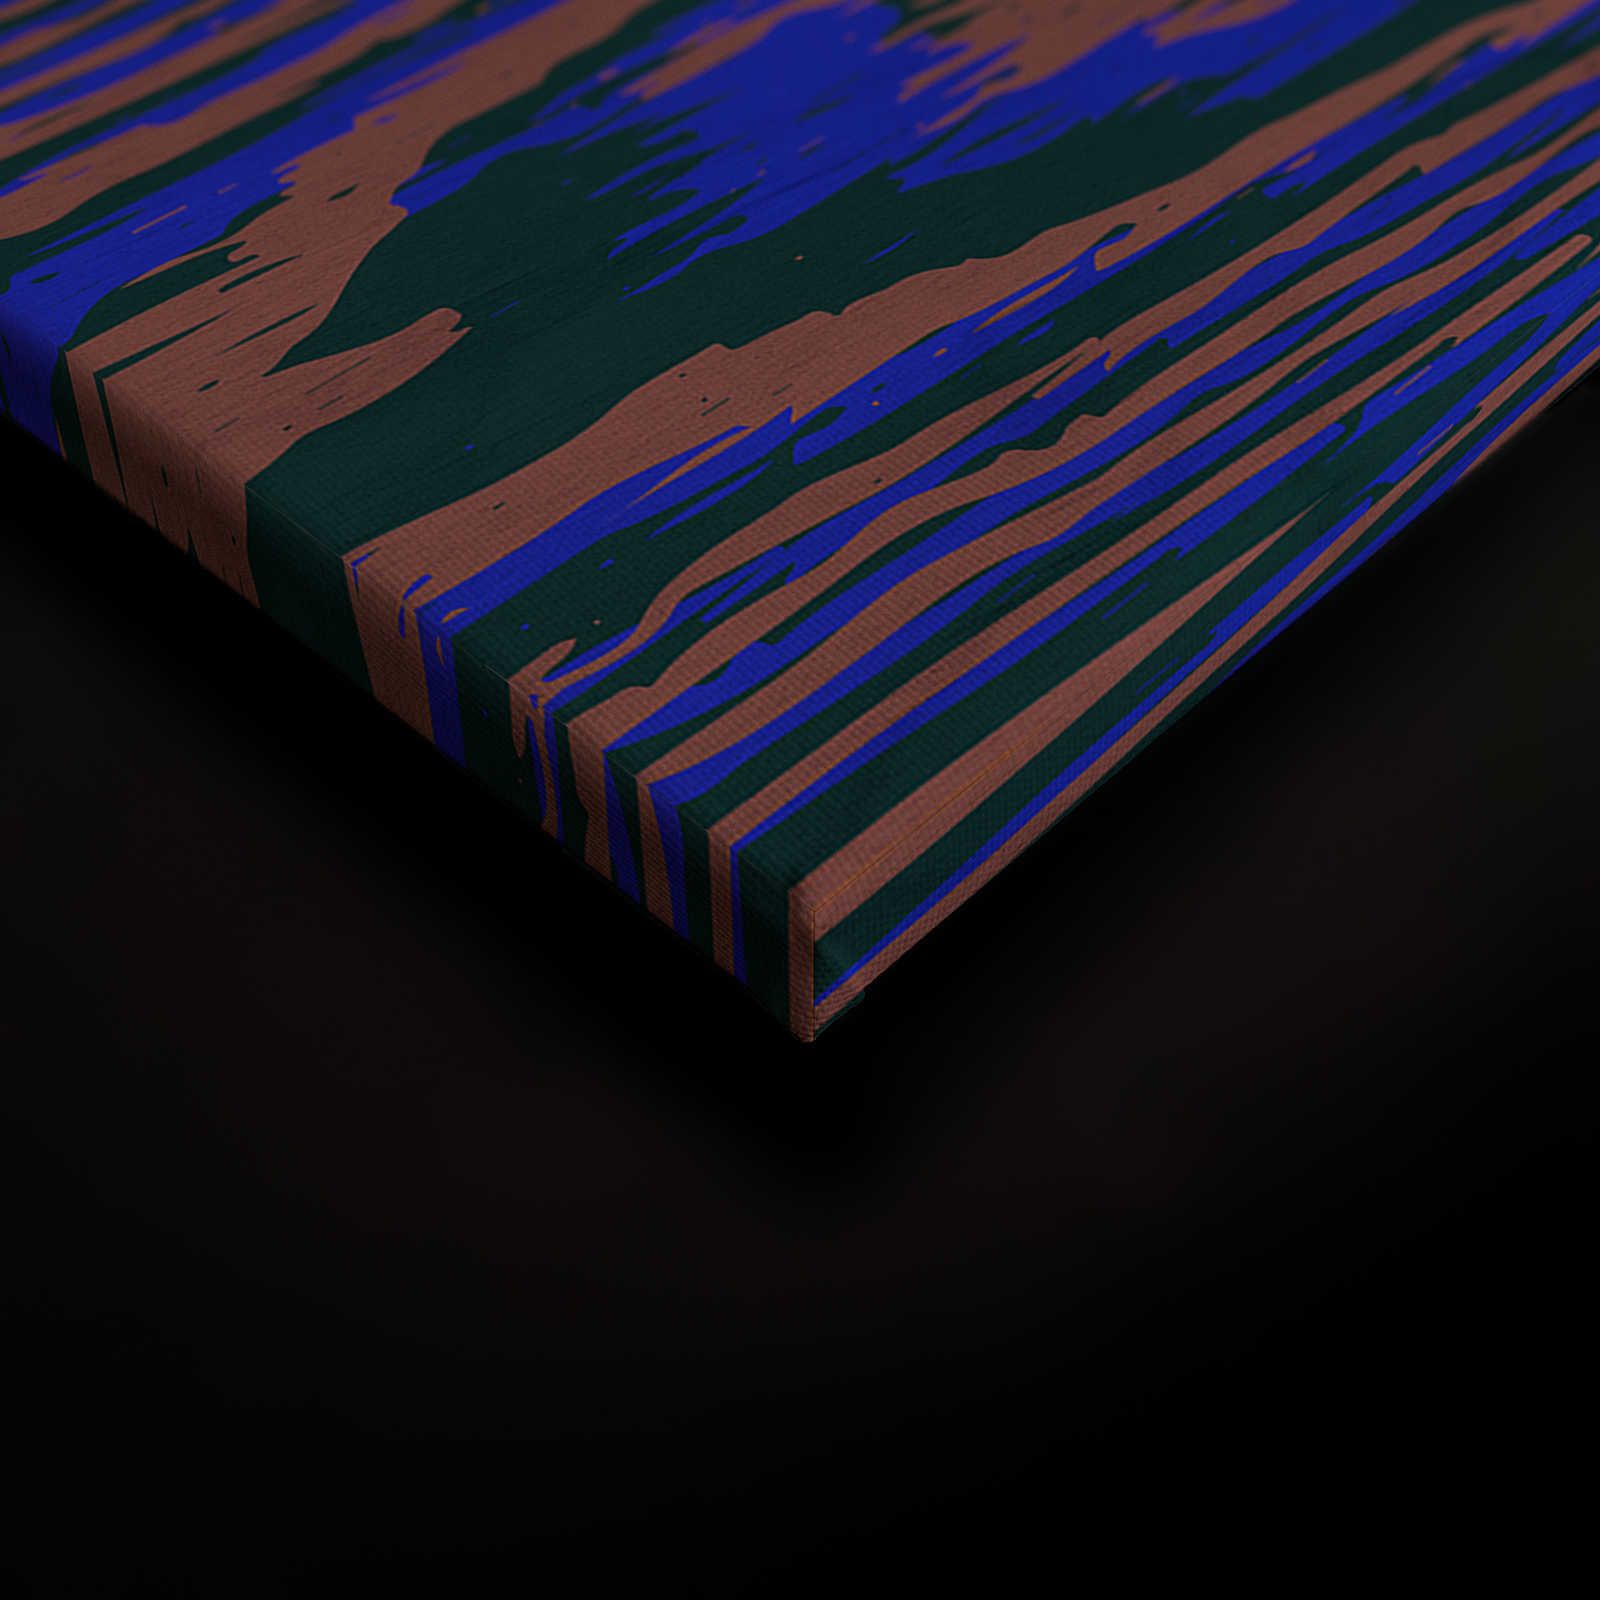             Kontiki 3 - Quadro su tela Neon Wood Grain, Viola e Nero - 0,90 m x 0,60 m
        